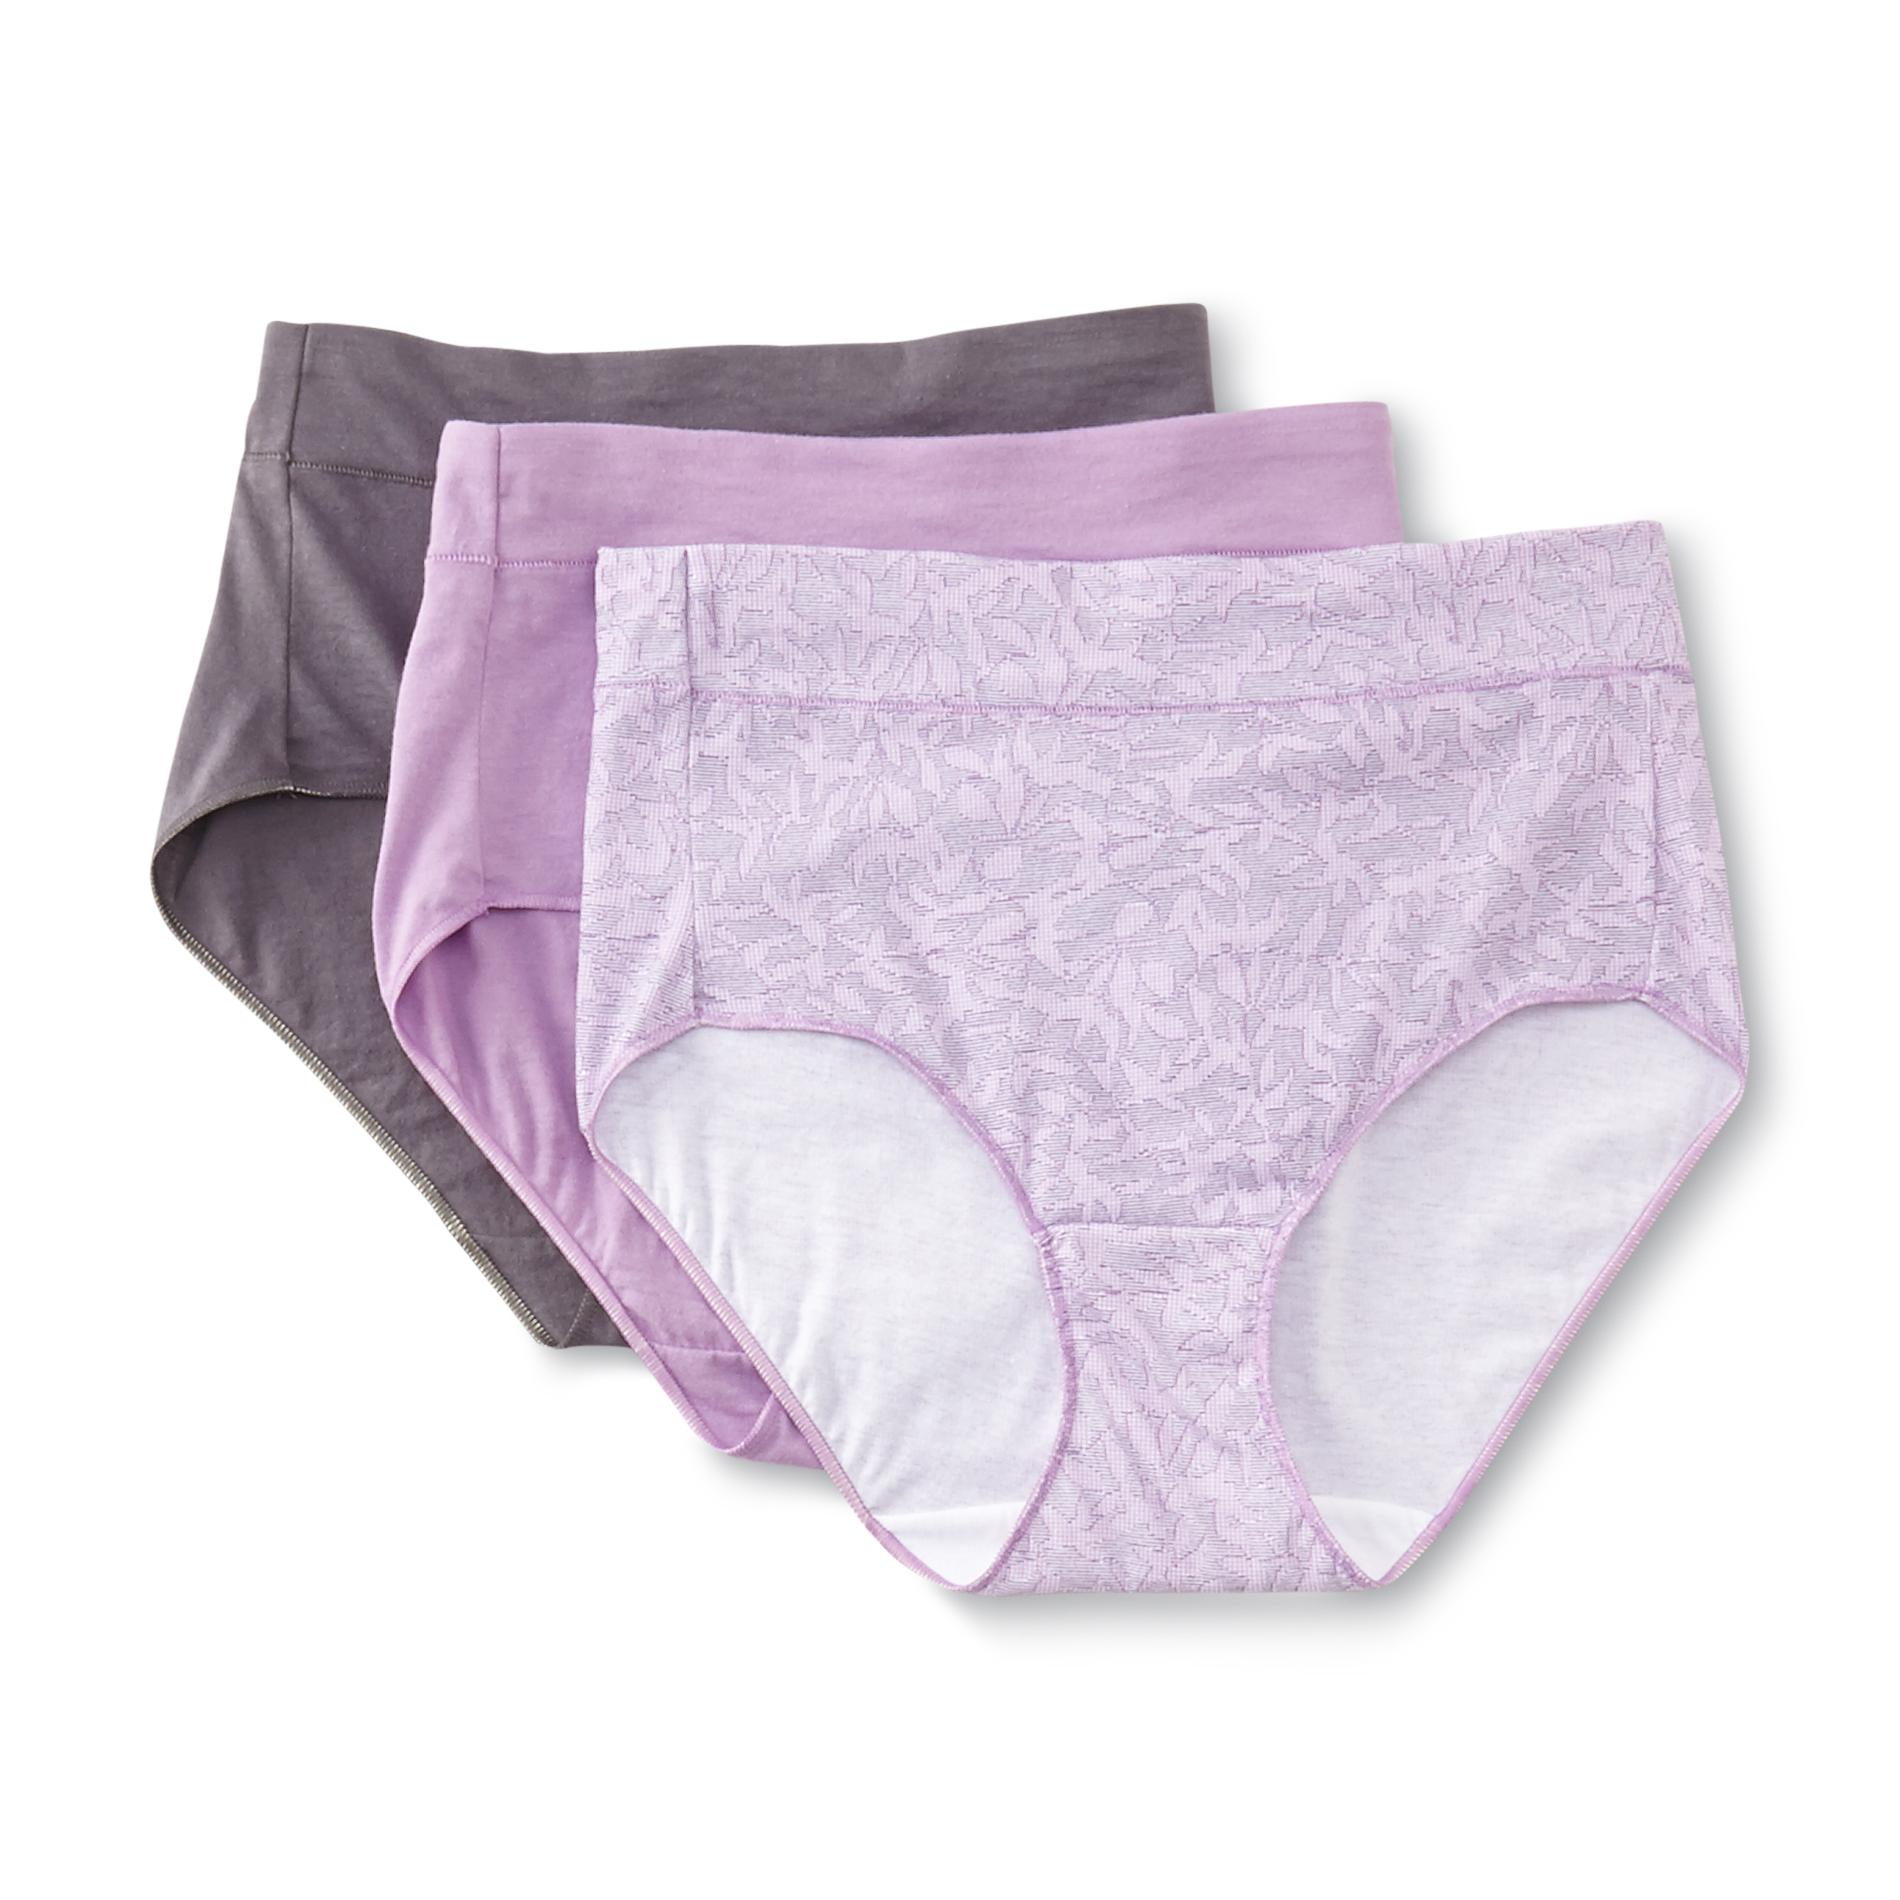 Hanes Women's 3-Pack Constant Comfort X-Temp Brief Panties